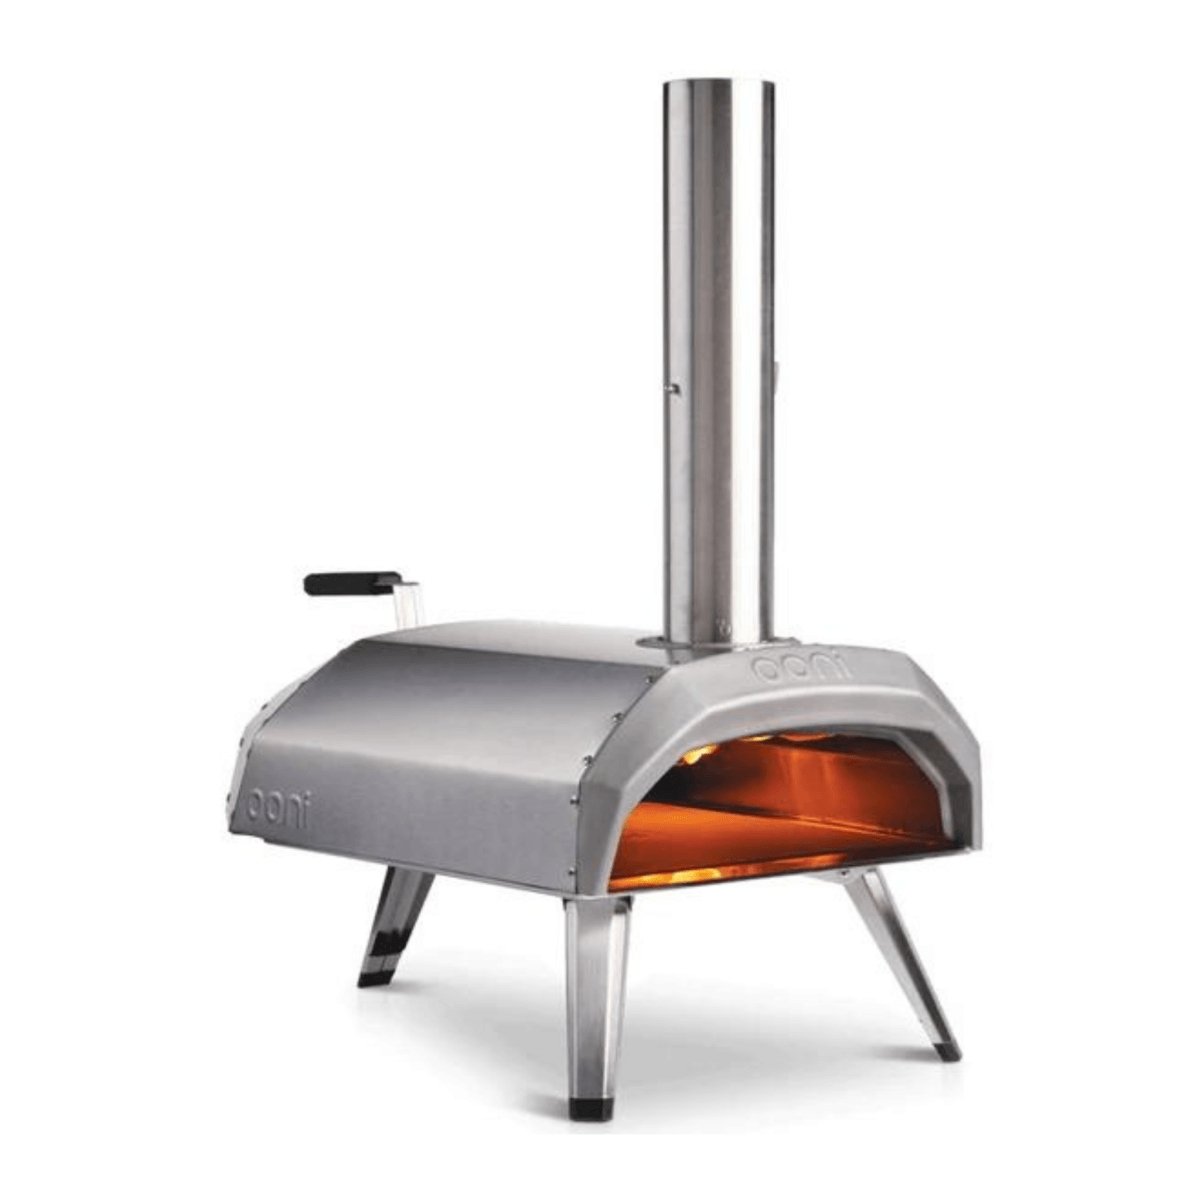 Ooni Pizza Ovens - Multi-Fuel